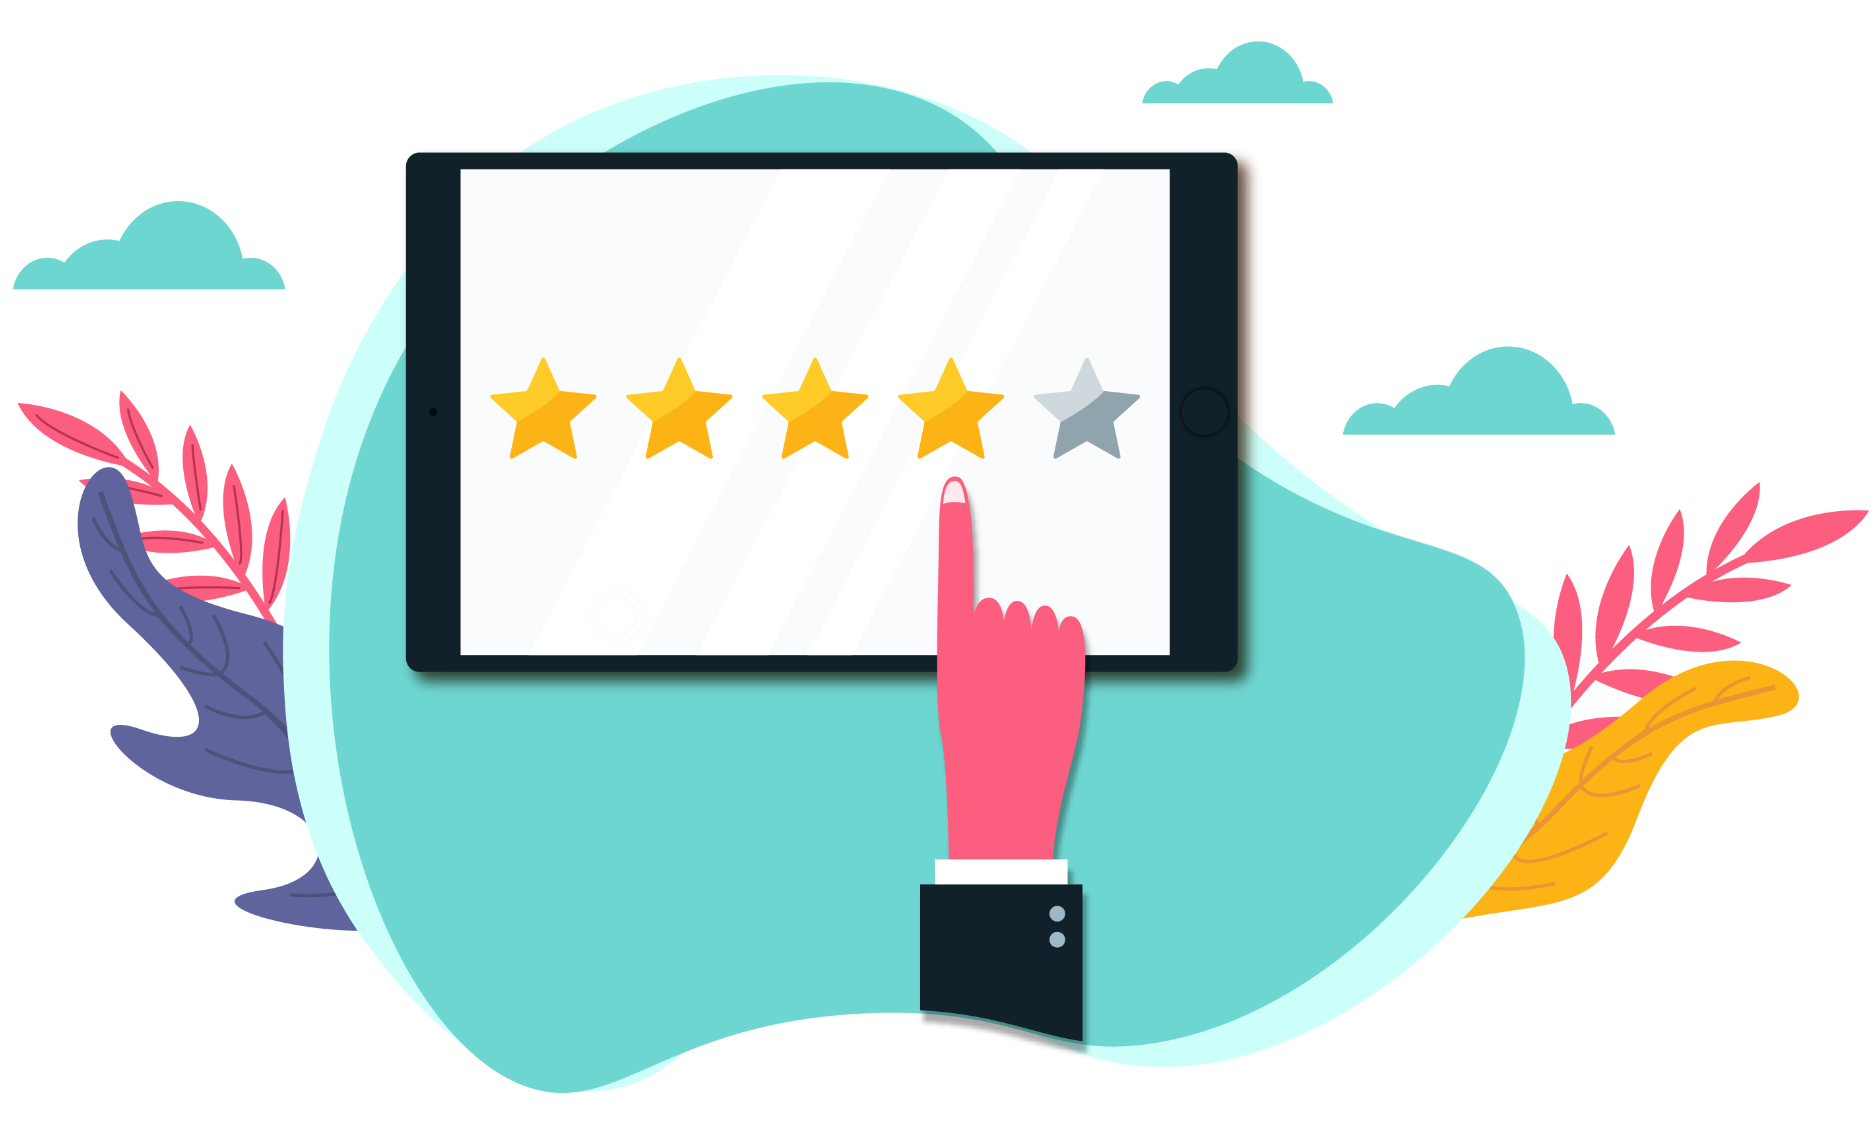 Customer Reviews And Feedback